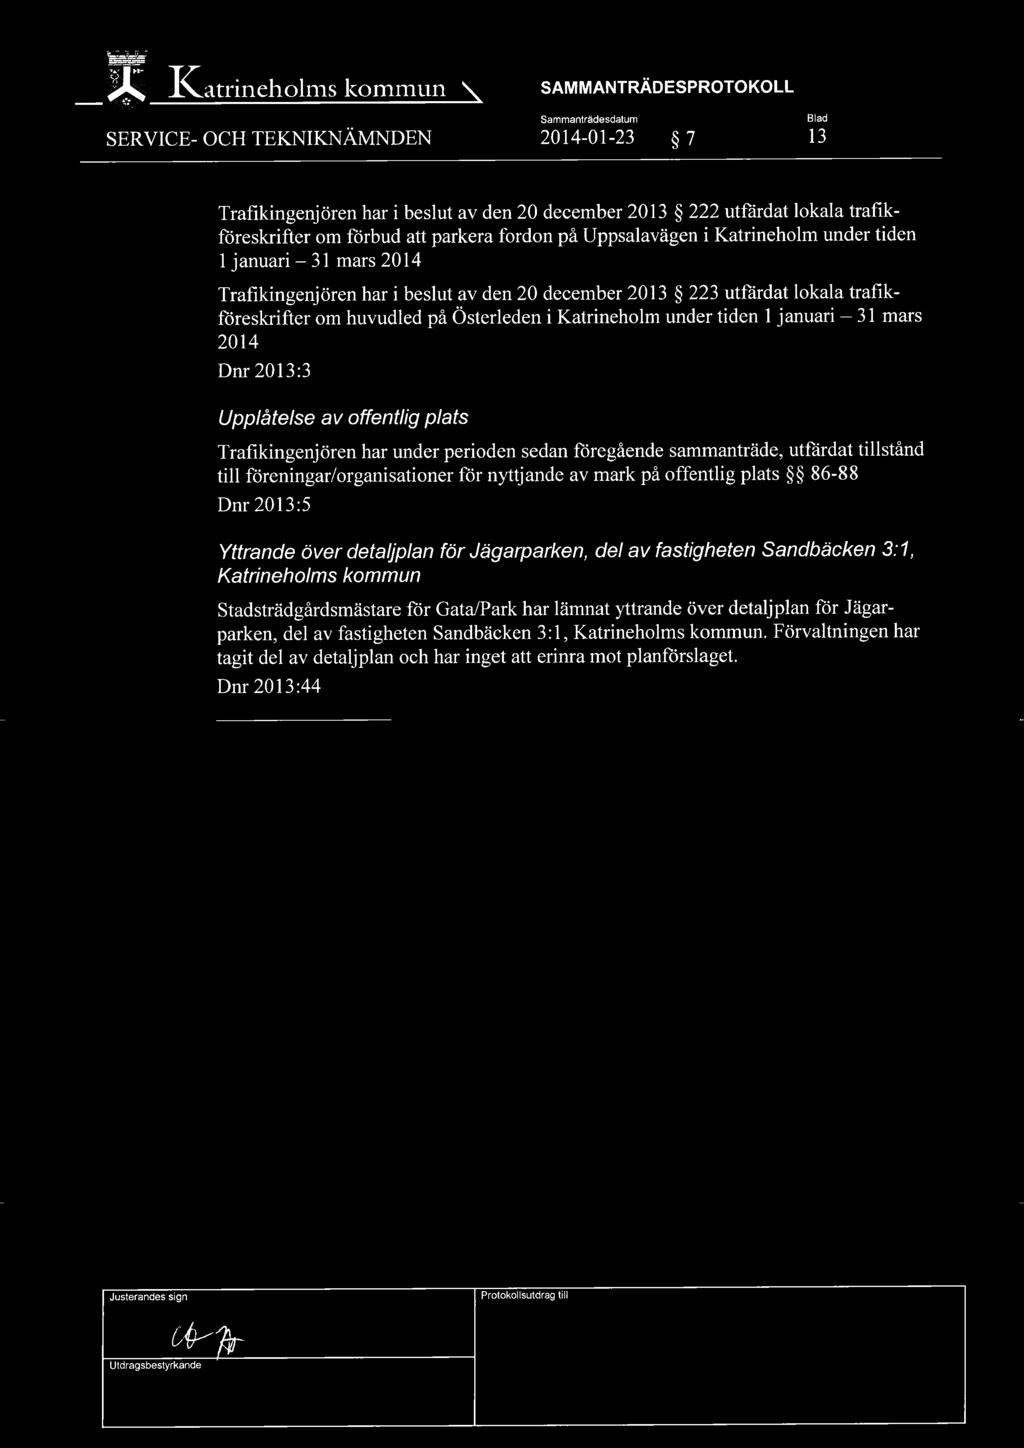 i Katrineholm under tiden 1 januari 31 mars 2014 Dnr 2013:3 Upplåtelse av offentlig plats Trafikingenjören har under perioden sedan föregående sammanträde, utfärdat tillstånd till